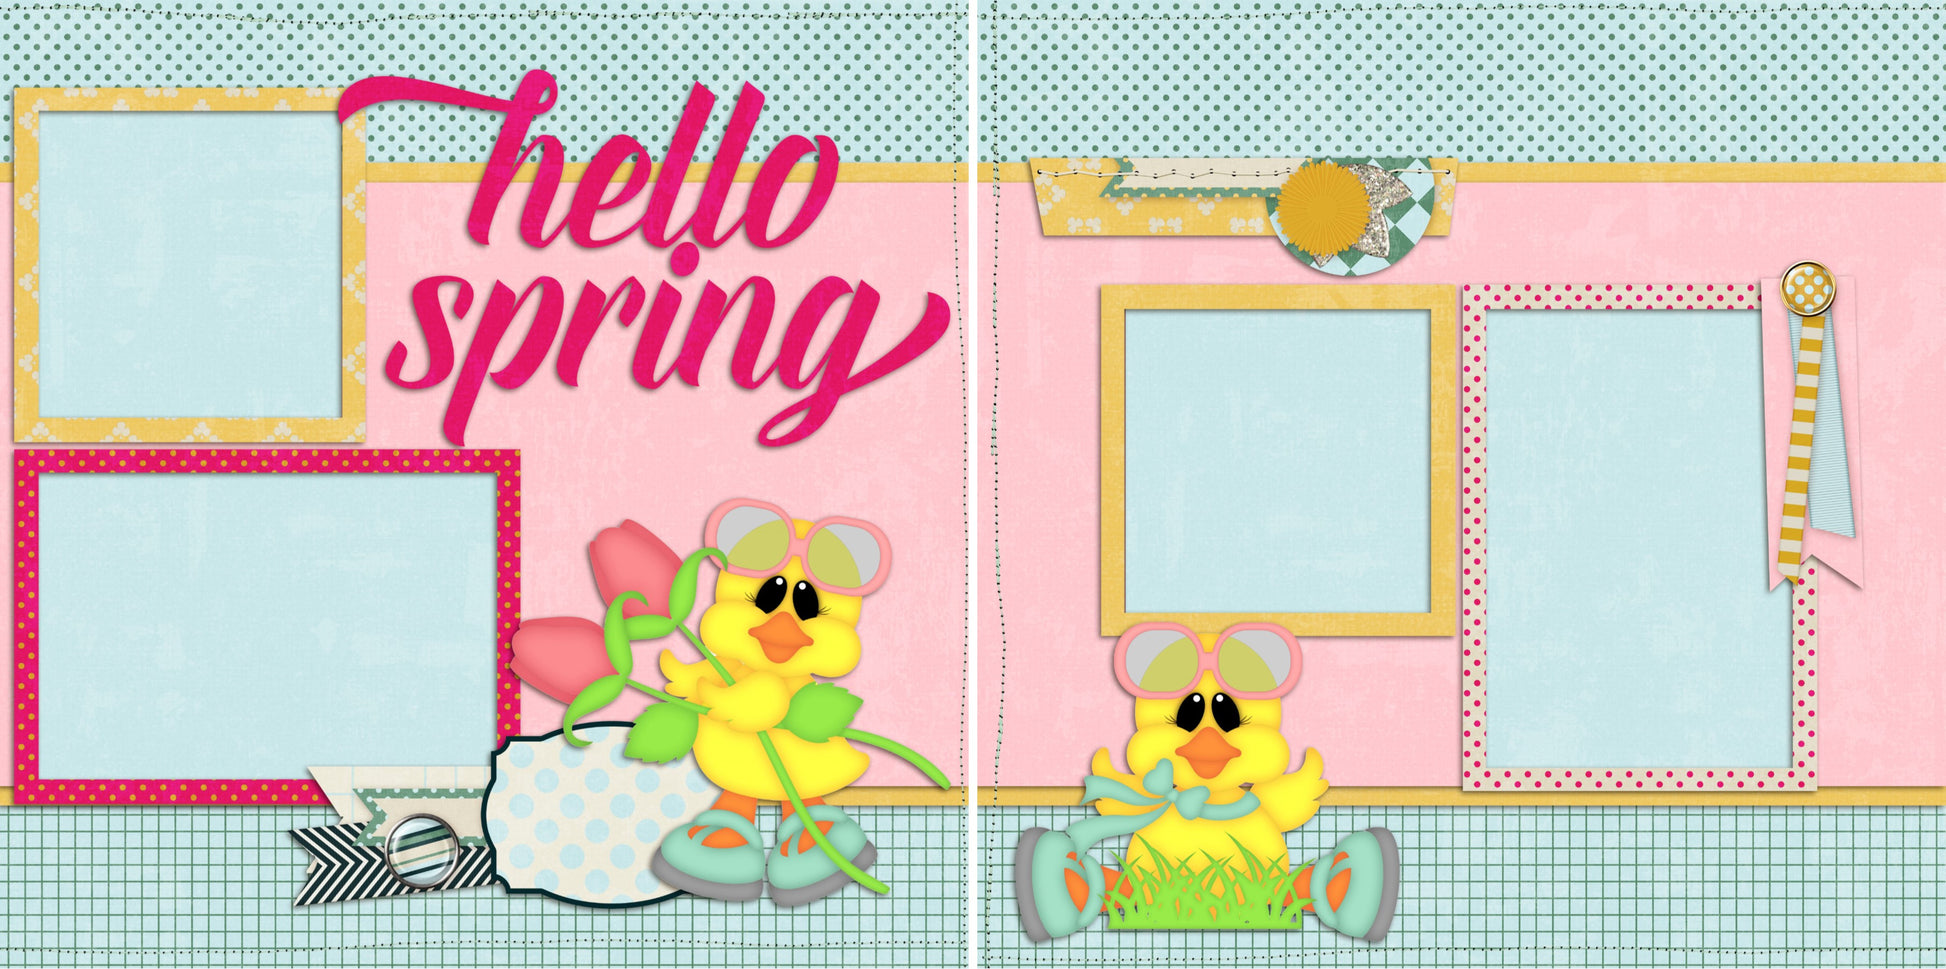 Hello Spring - 2060 - EZscrapbooks Scrapbook Layouts Family, Farm - Garden, Spring - Easter